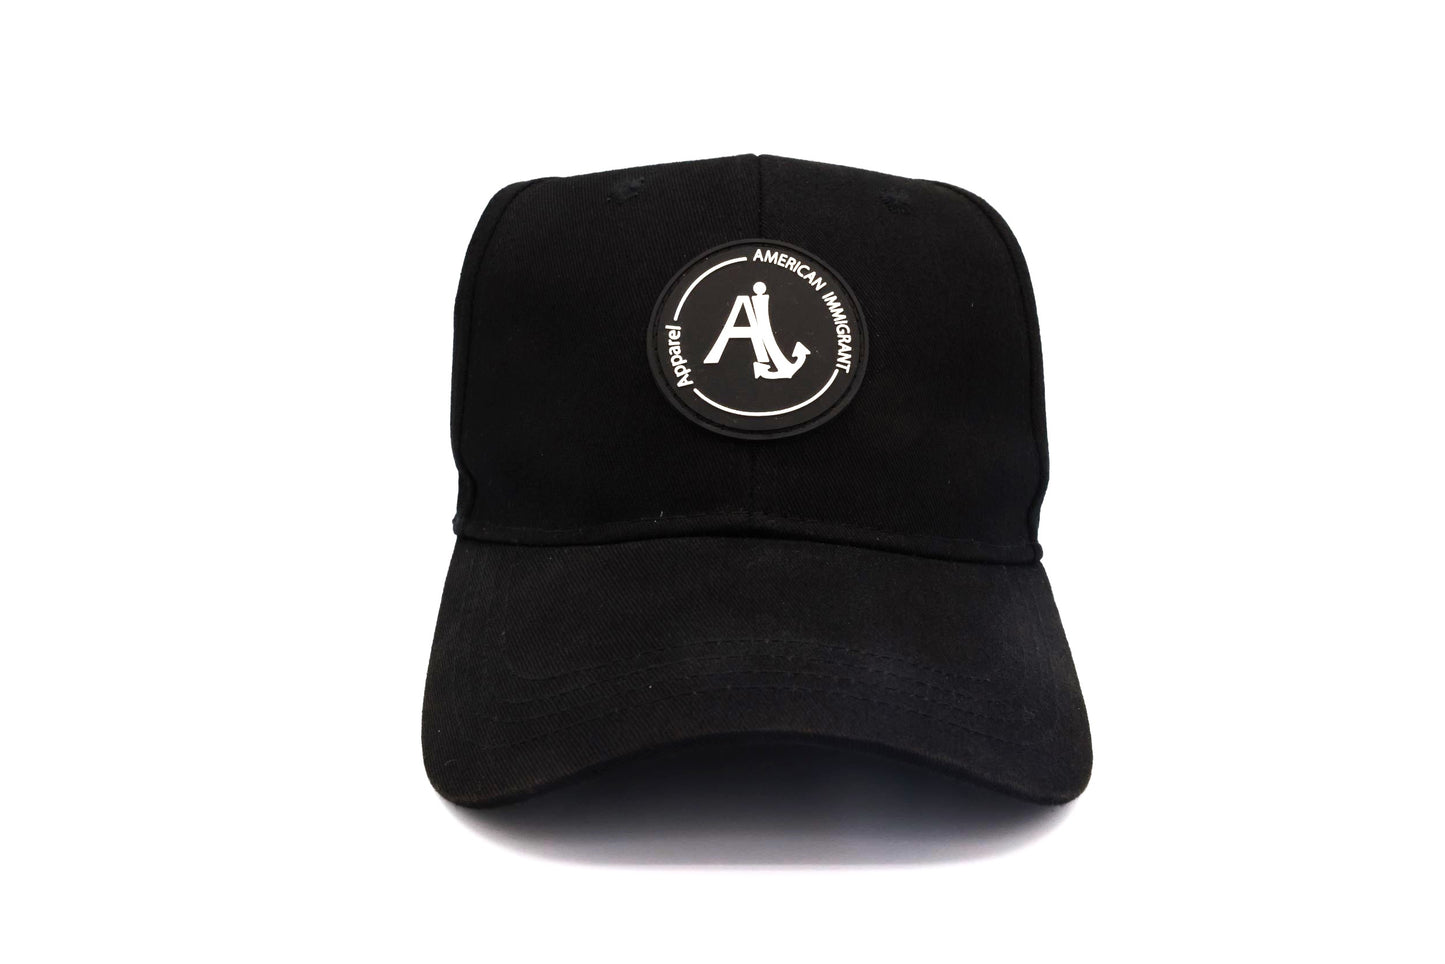 CAP with White Ai Logo